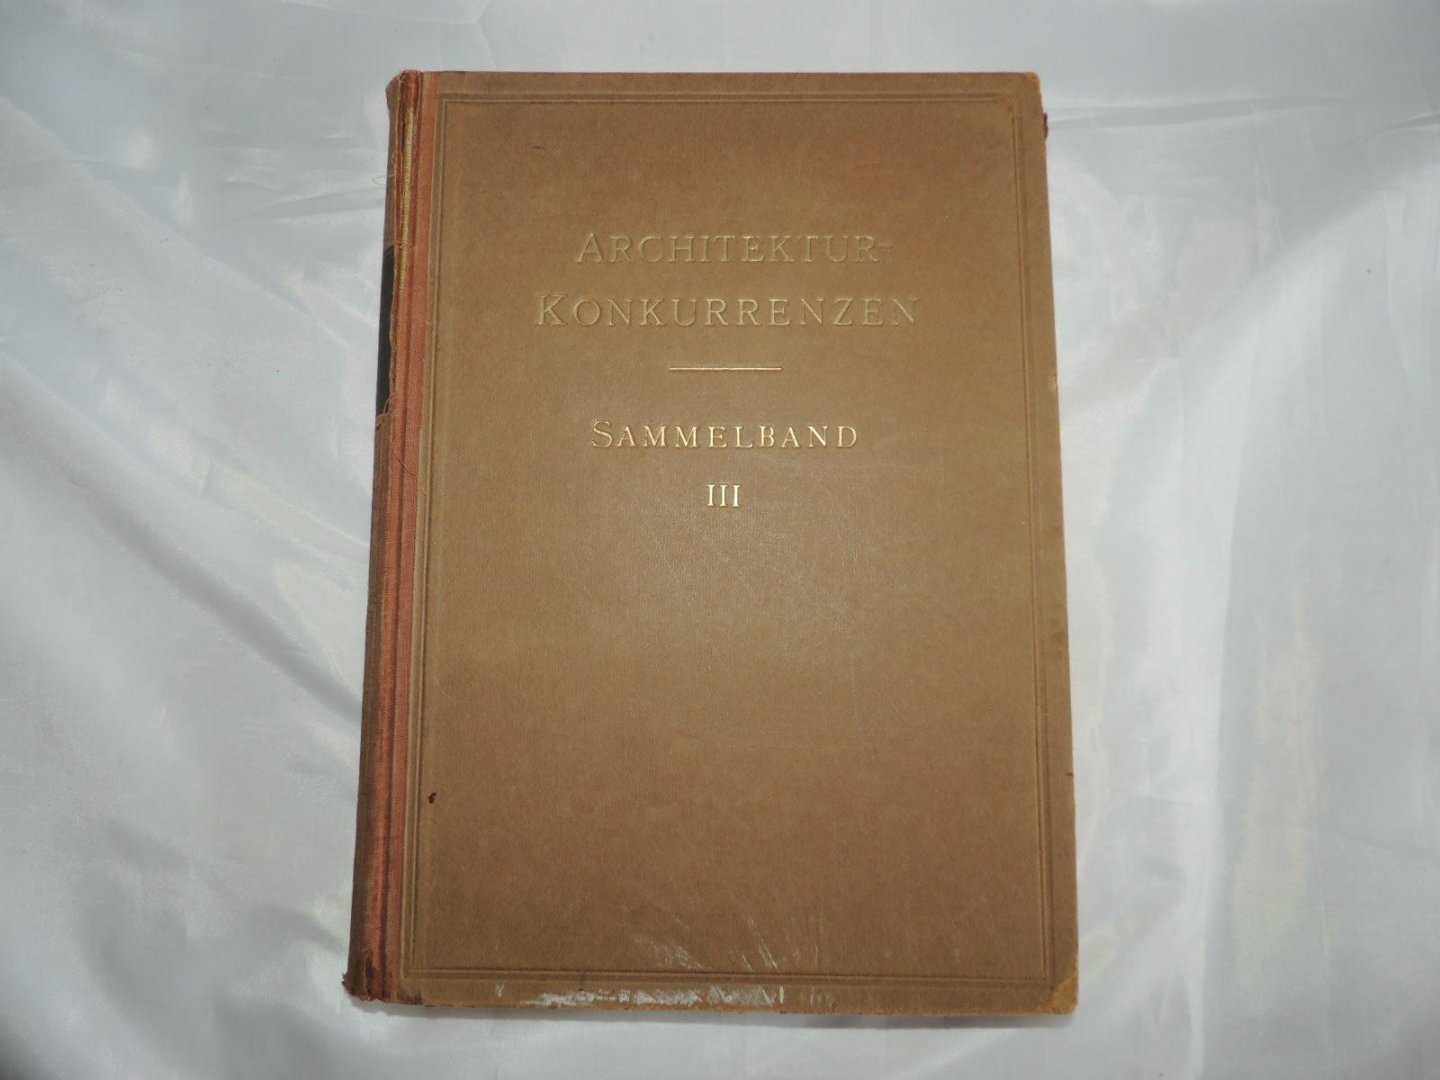 Hermann Scheurembrandt. -  Ernst Wasmuth - Architektur-Konkurrenzen. Sammelband I - II - III. ArchitekturKonkurrenzen 1 -2 -3.